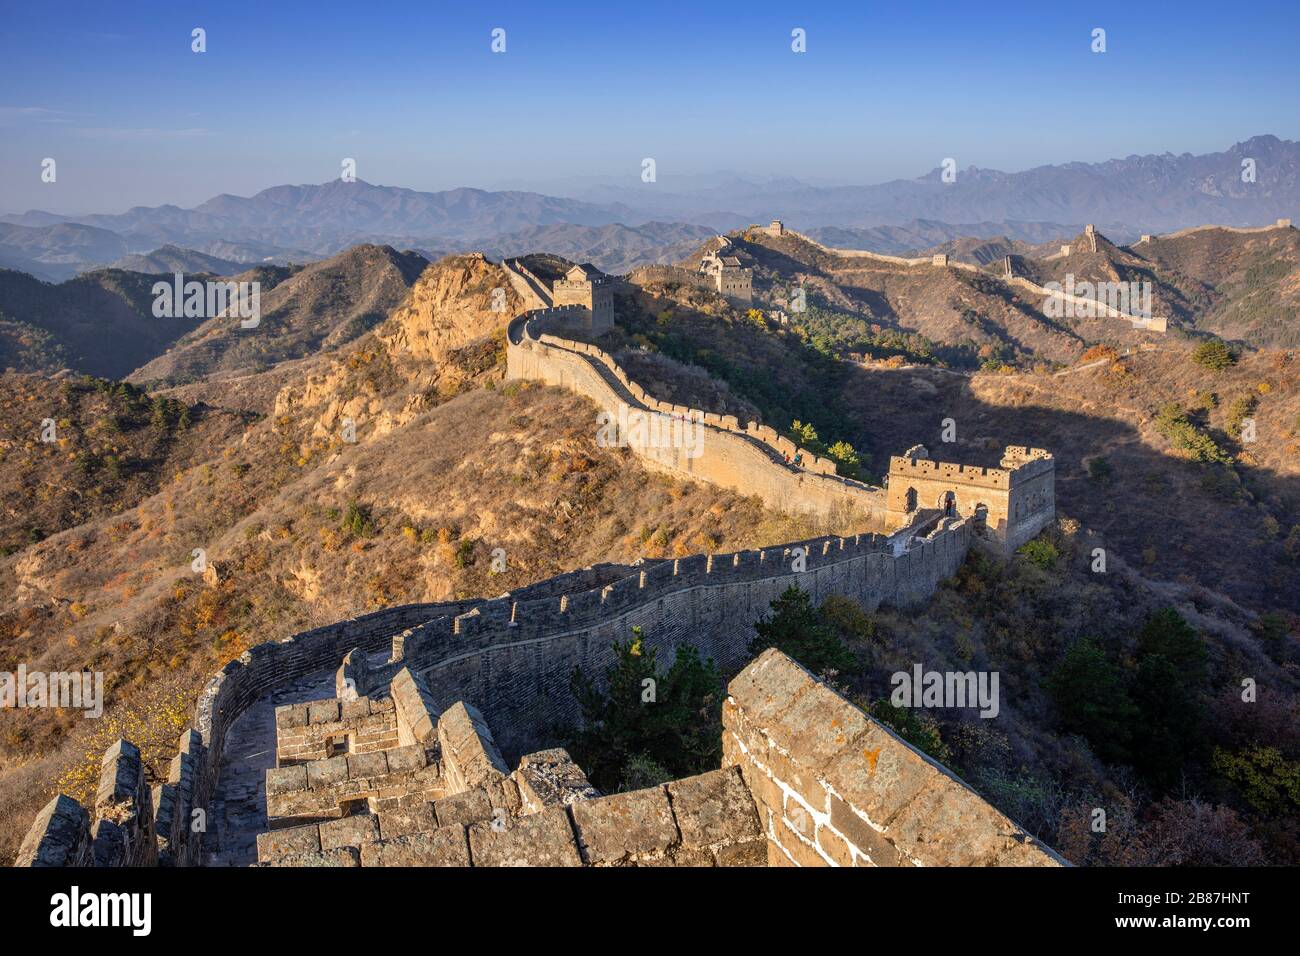 Jinshanling Great Wall of China, Beijing Stock Photo